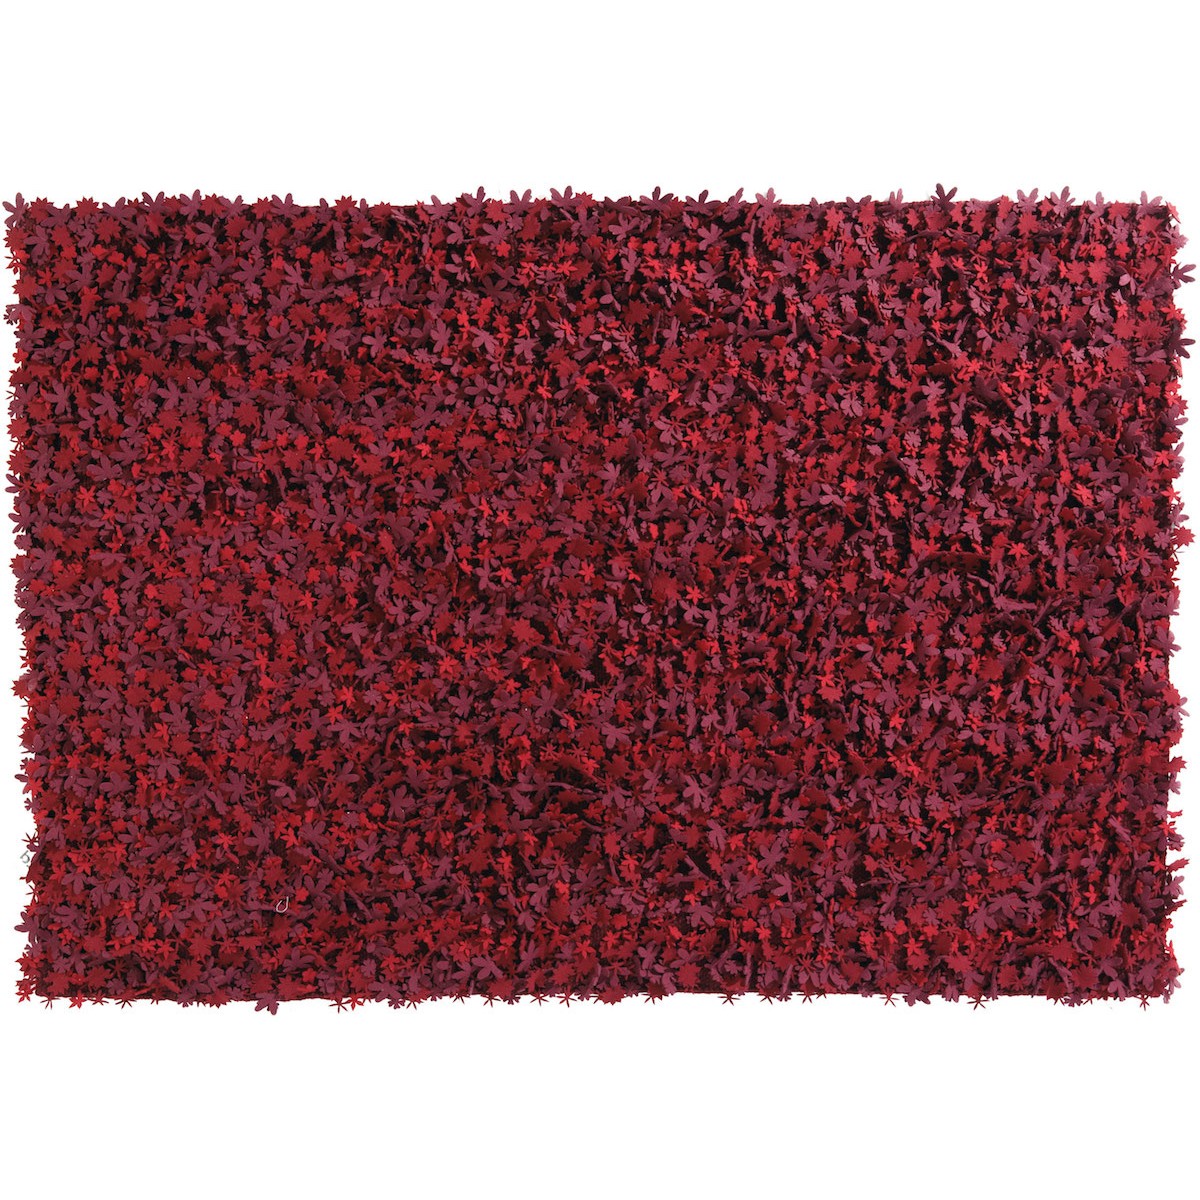 200x300cm - nuances de rouge - tapis Little Field Of Flowers